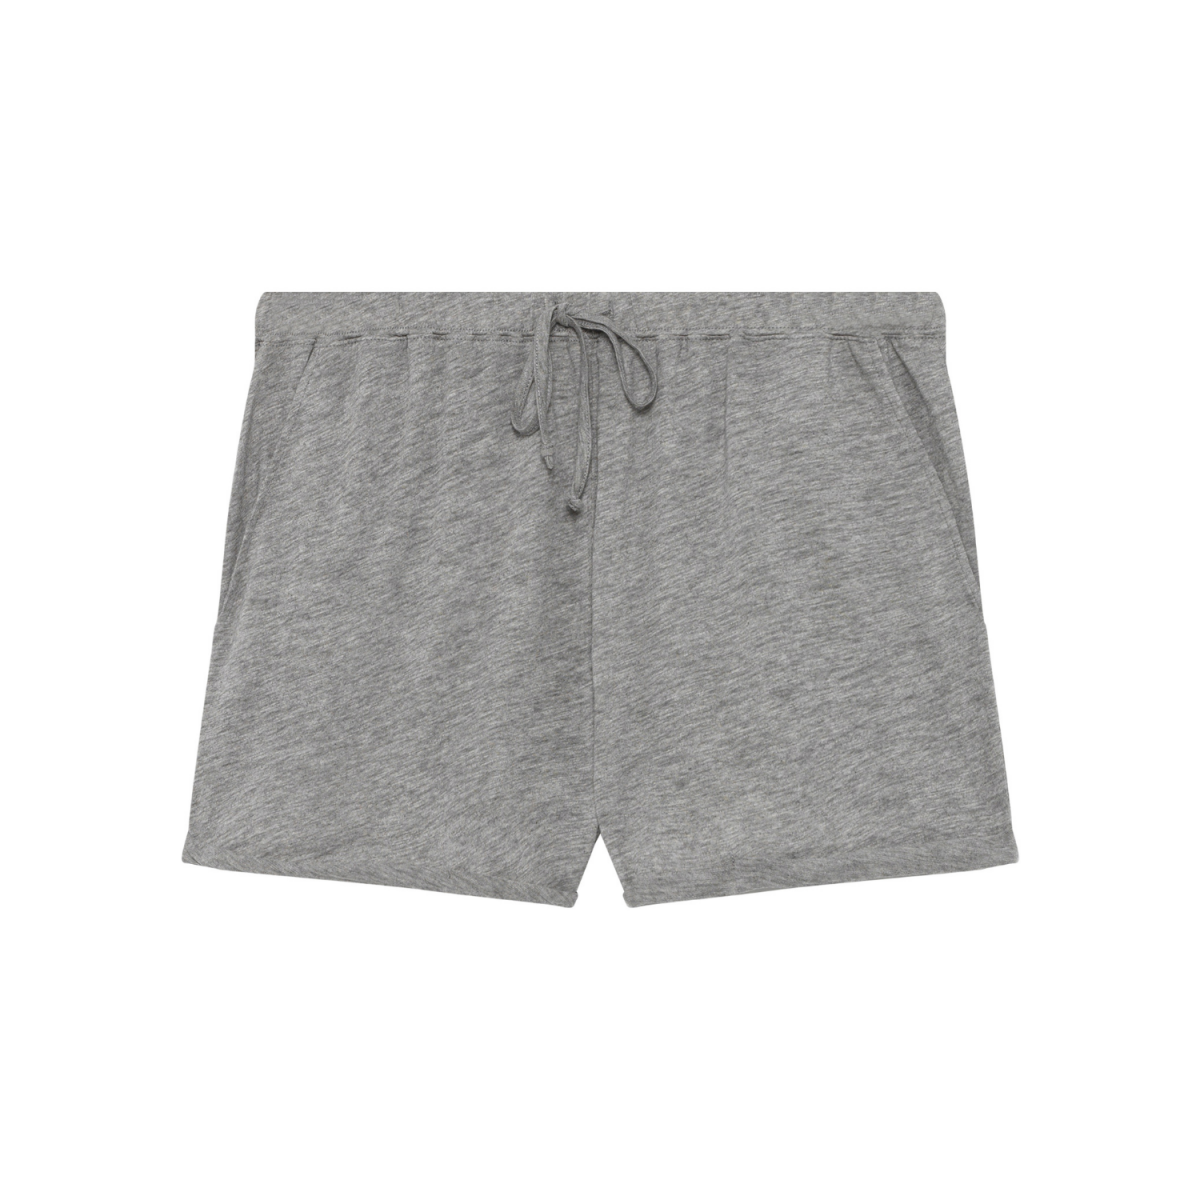 idolmint shorts - grey melange - front billede 